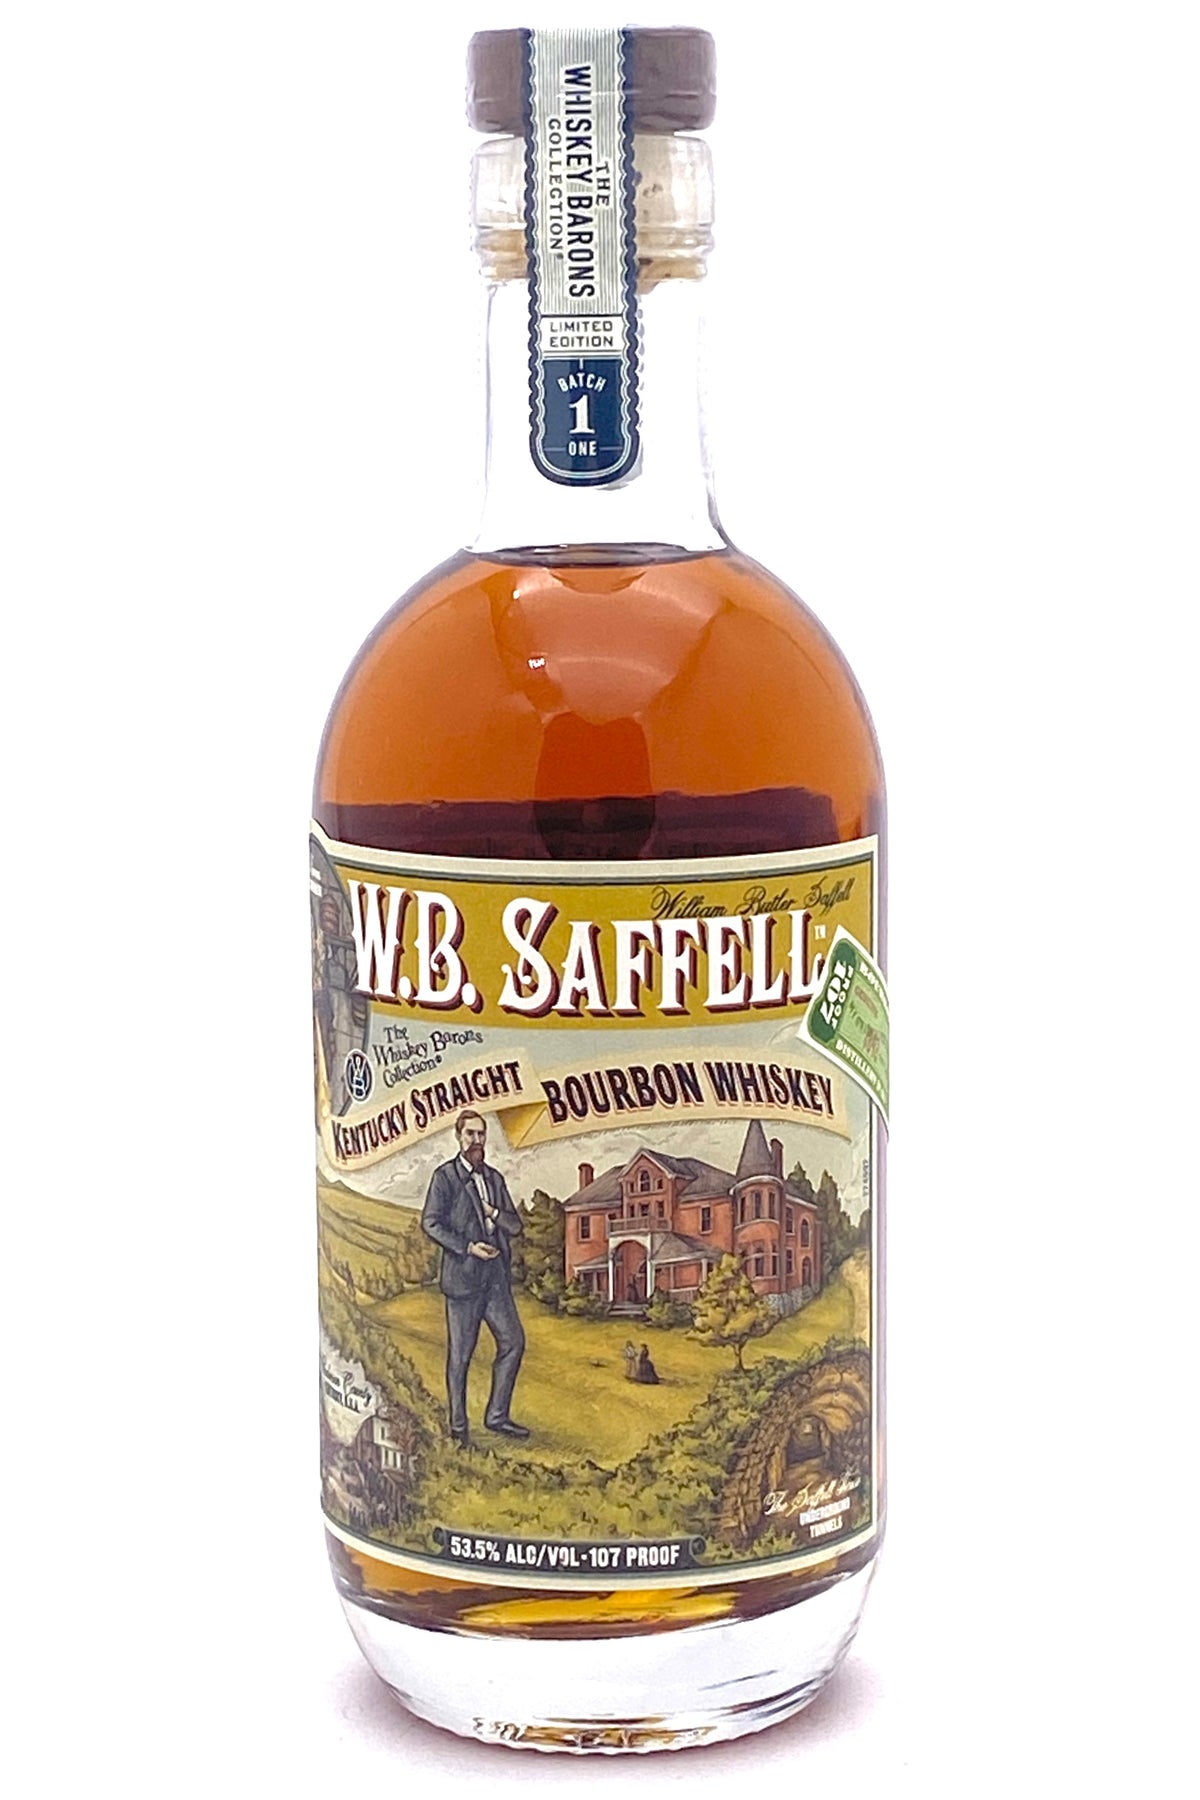 W.B. Saffell Kentucky Straight Bourbon Whiskey 375 ml